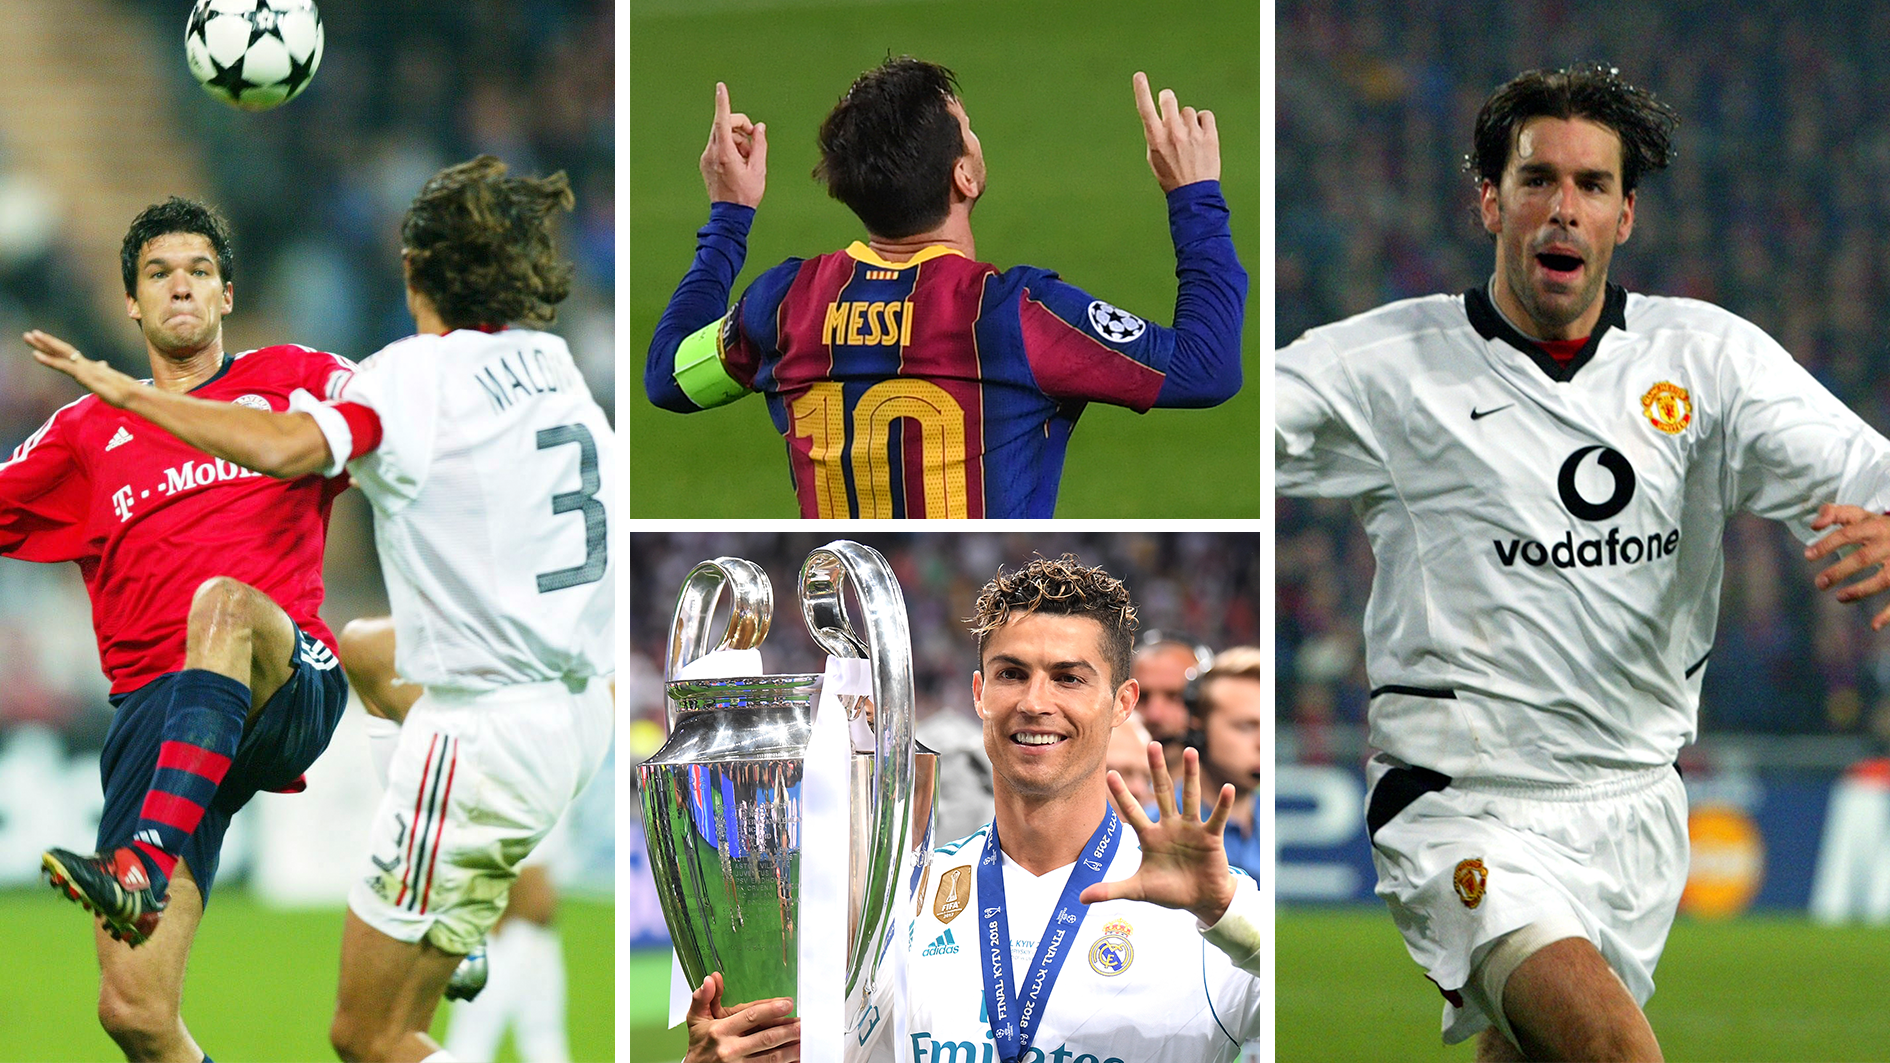 <strong>Champions League: So lief die letzte Saison ohne Messi und Ronaldo</strong><br>Keine Spieler haben die Champions League so sehr geprägt wie die Rivalen Messi und Ronaldo. Nach 21 Jahren hat sich das Kapitel der beiden Superstars im europäischen Spitzenfußball aber geschlossen. Die kommende Edition der Königsklasse wird damit die erste seit der&nbsp;Saison 2002/2003 sein, die ohne die Beiden stattfindet. <strong><em>ran</em></strong> blickt zurück.